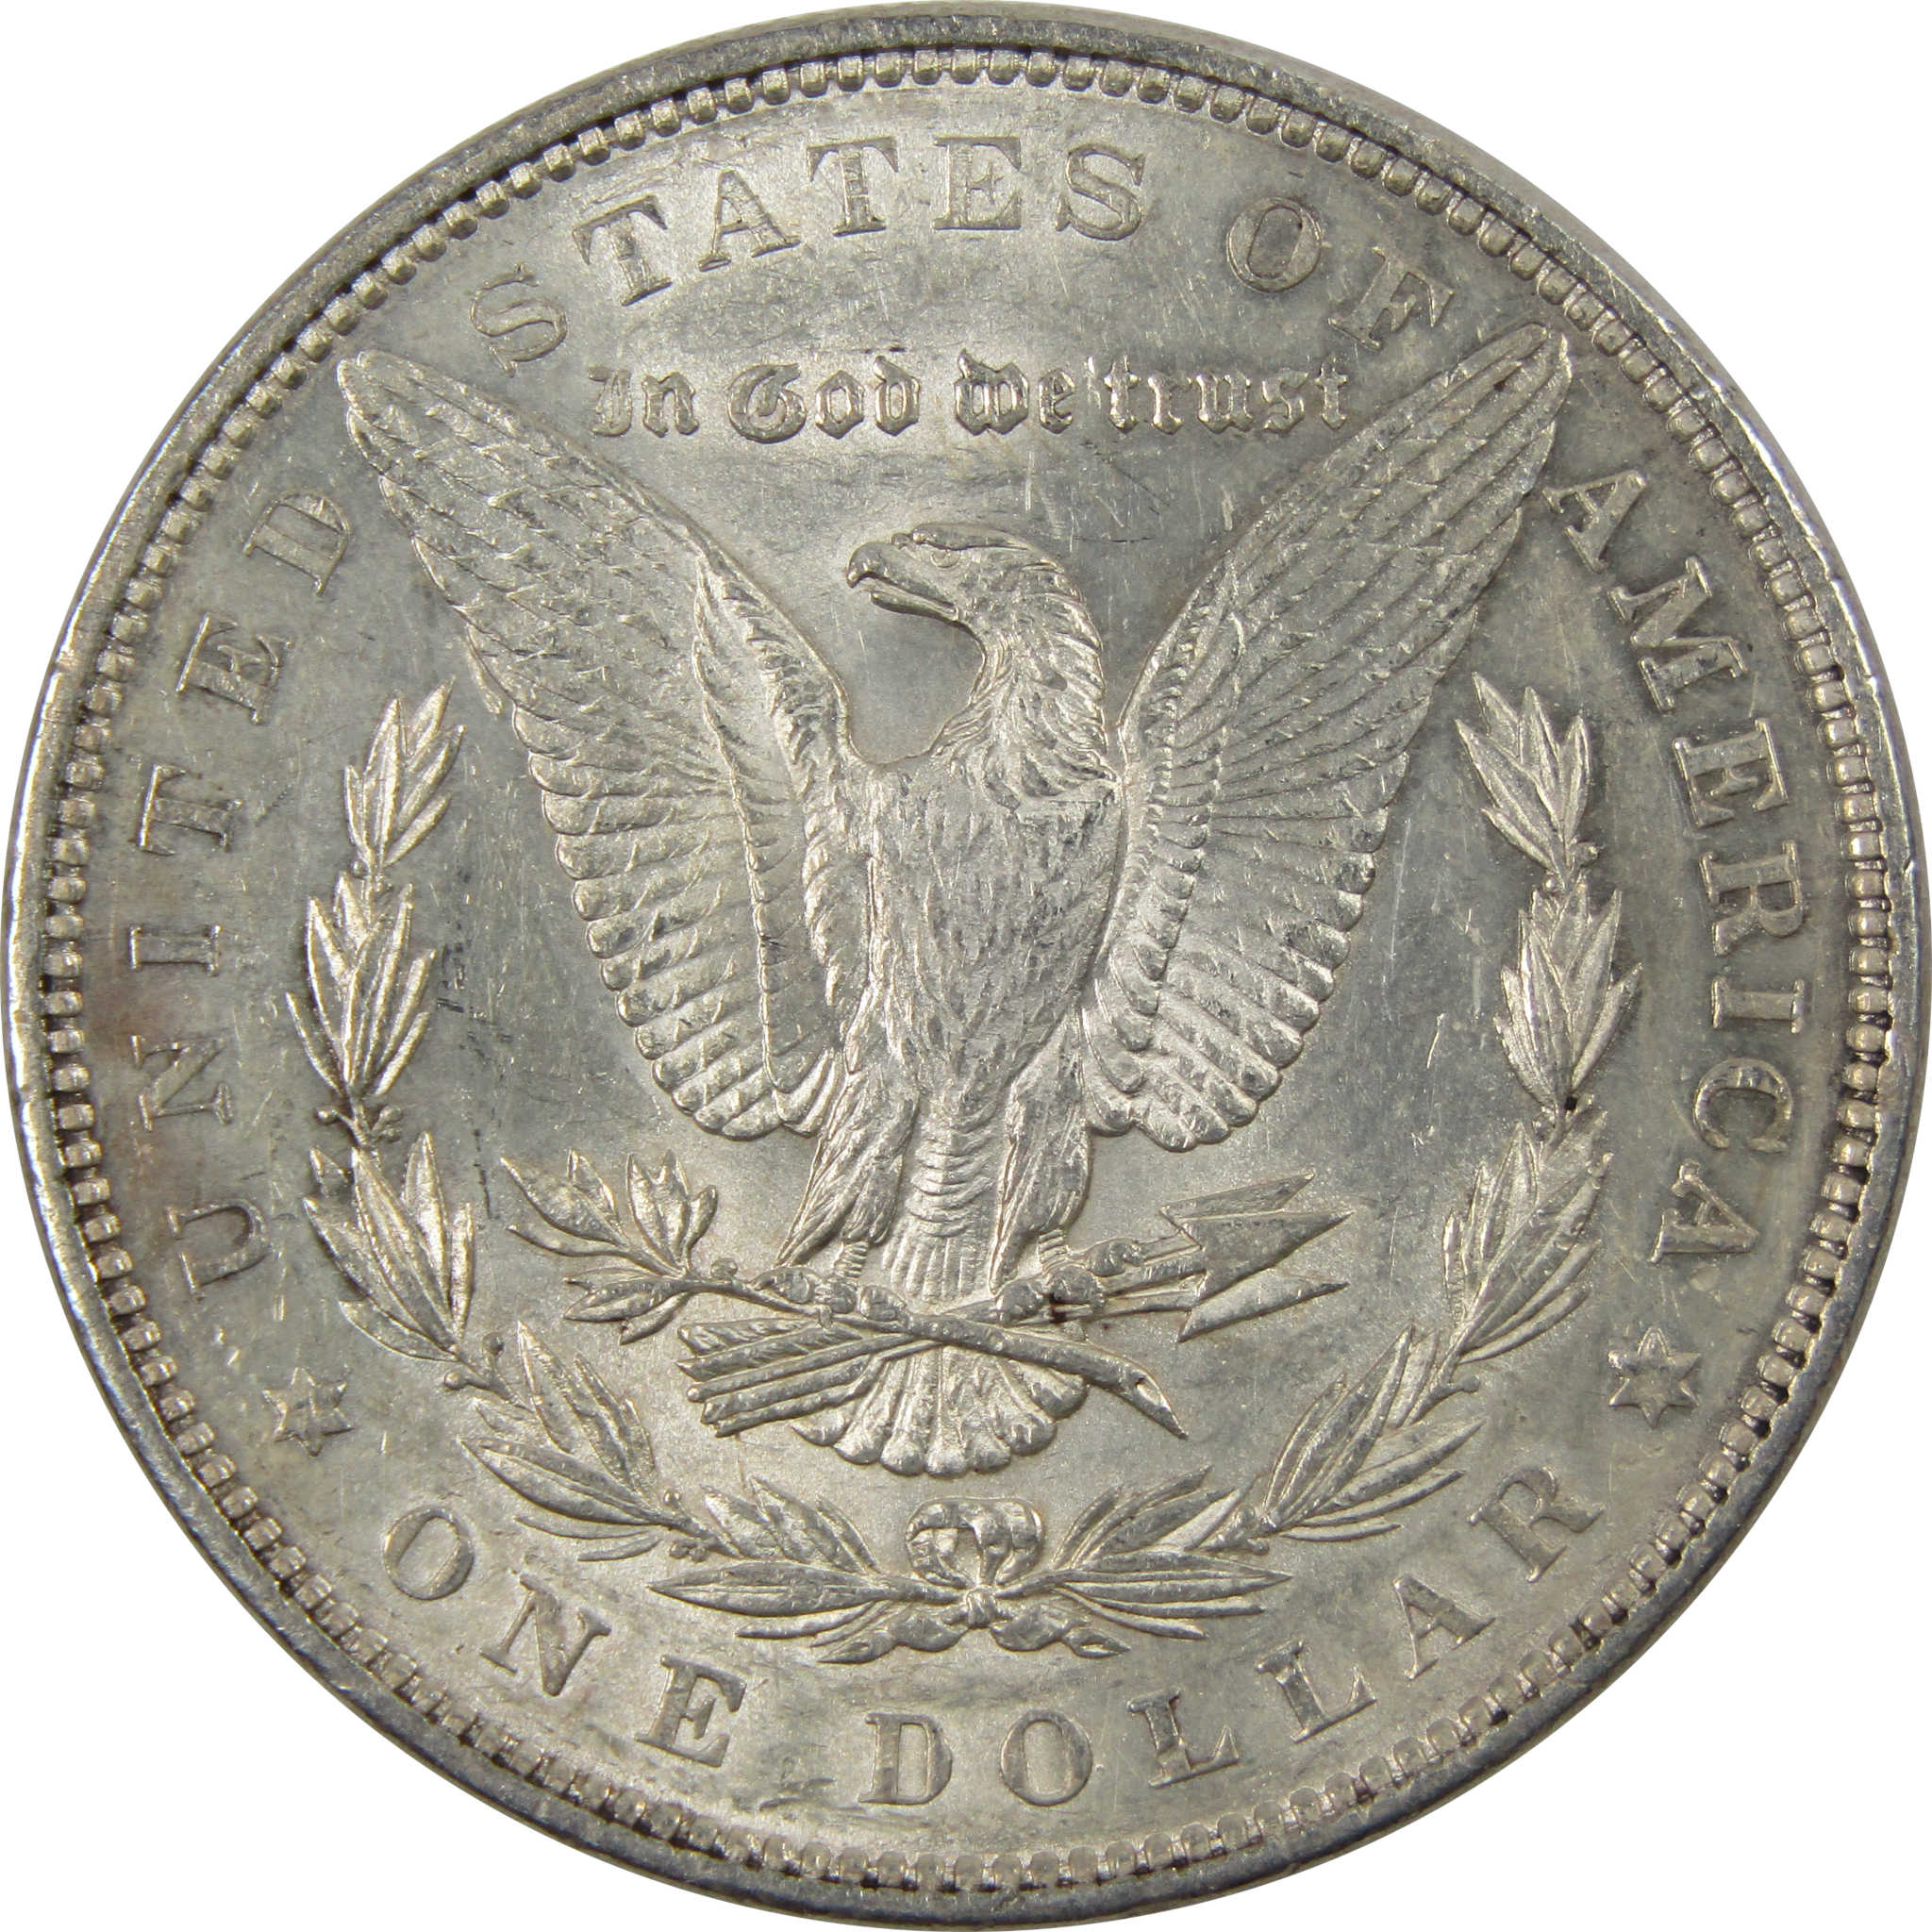 1878 7TF Rev 79 Morgan Dollar Borderline Uncirculated Silver SKU:I7381 - Morgan coin - Morgan silver dollar - Morgan silver dollar for sale - Profile Coins &amp; Collectibles